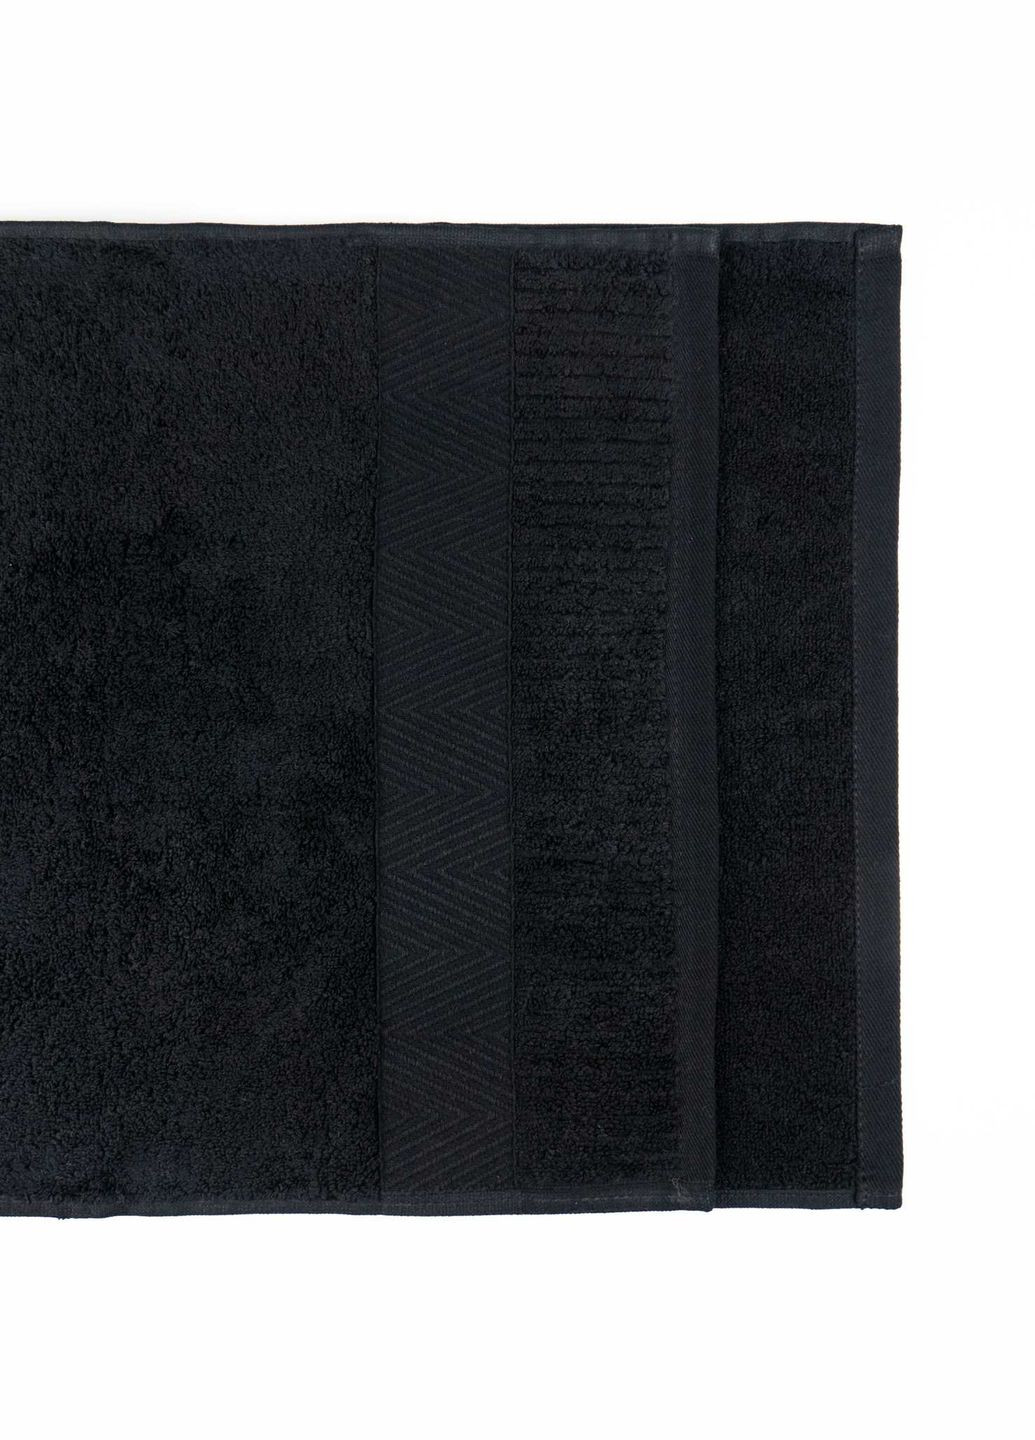 GM Textile набор махровых полотенец зеро твист бордюр 2шт 50x90см, 70x140см 550г/м2 () черный производство -